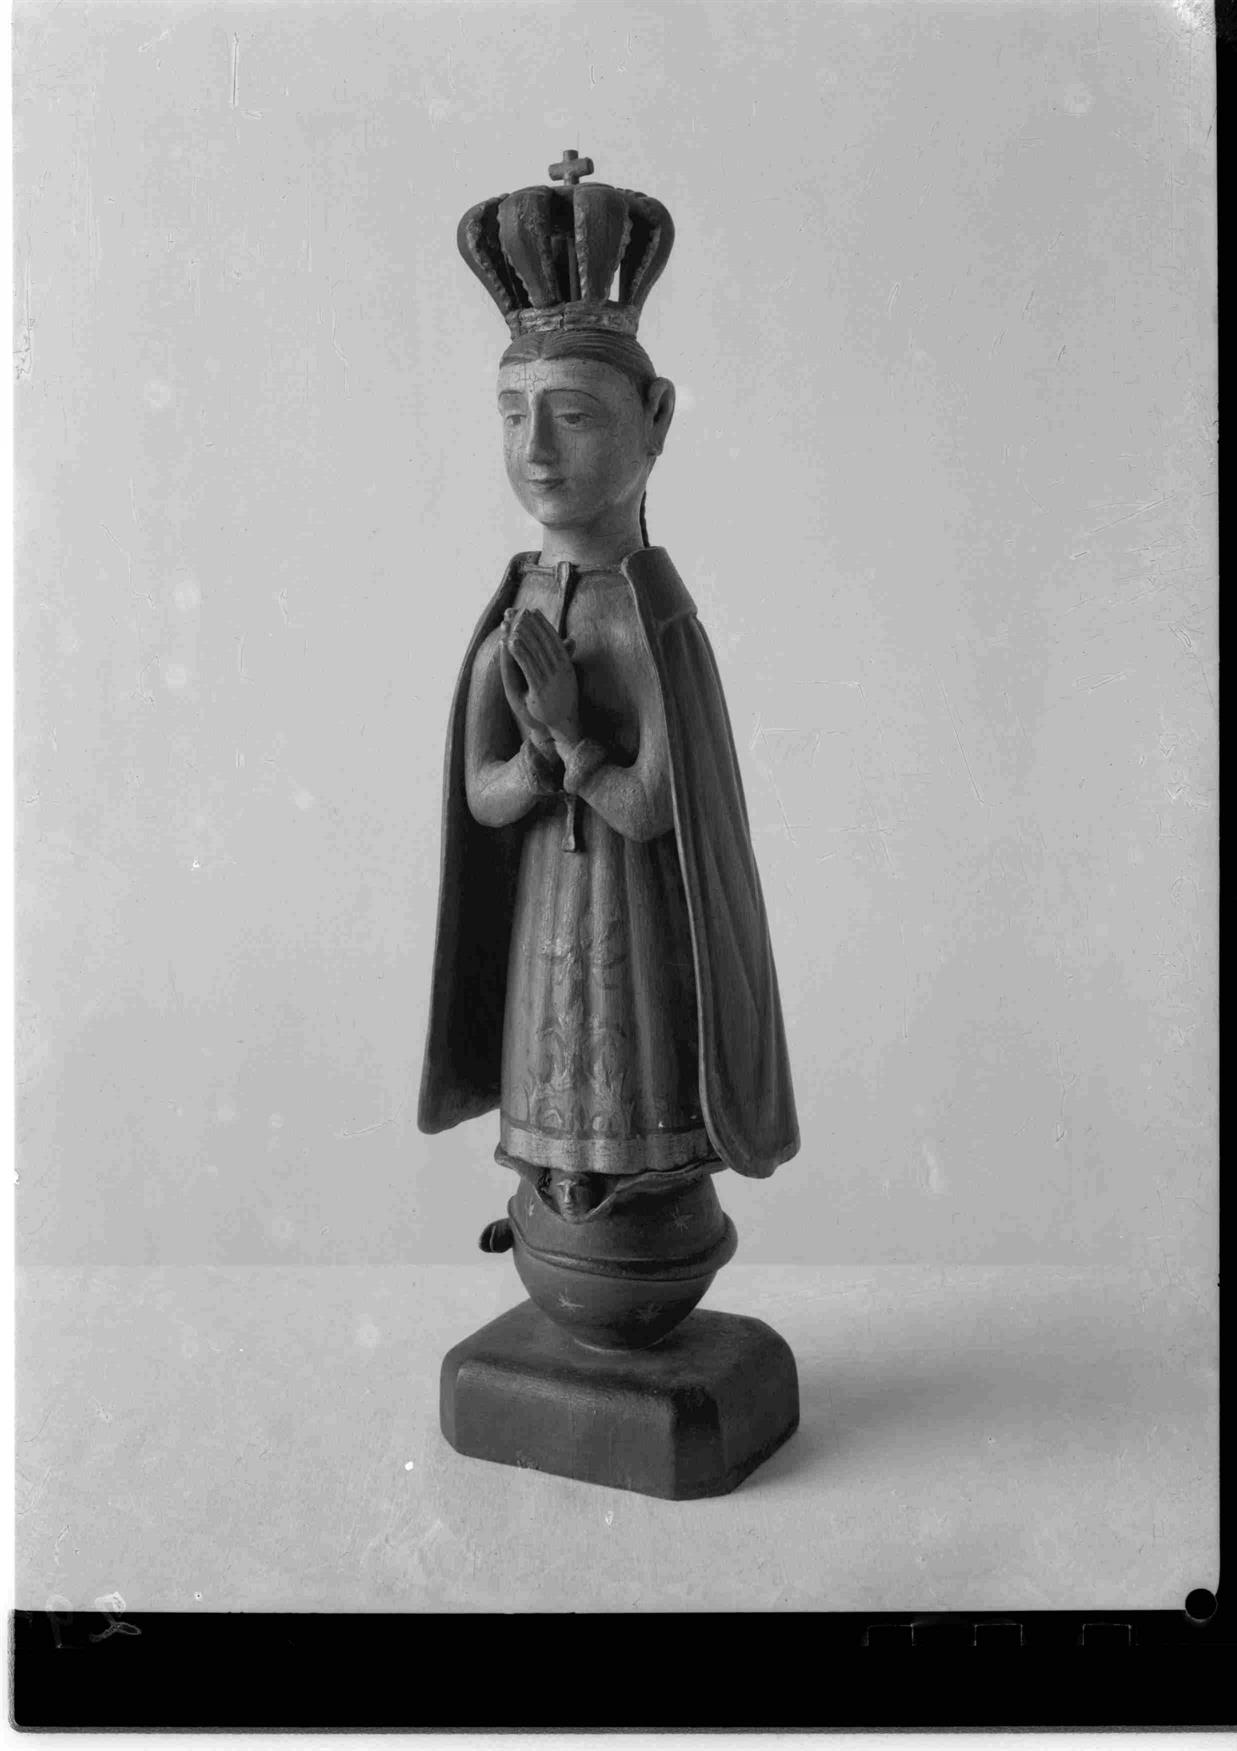 Imagens de Nossa Senhora : Nossa Senhora da Conceição : madeira : Macau : século XVIII